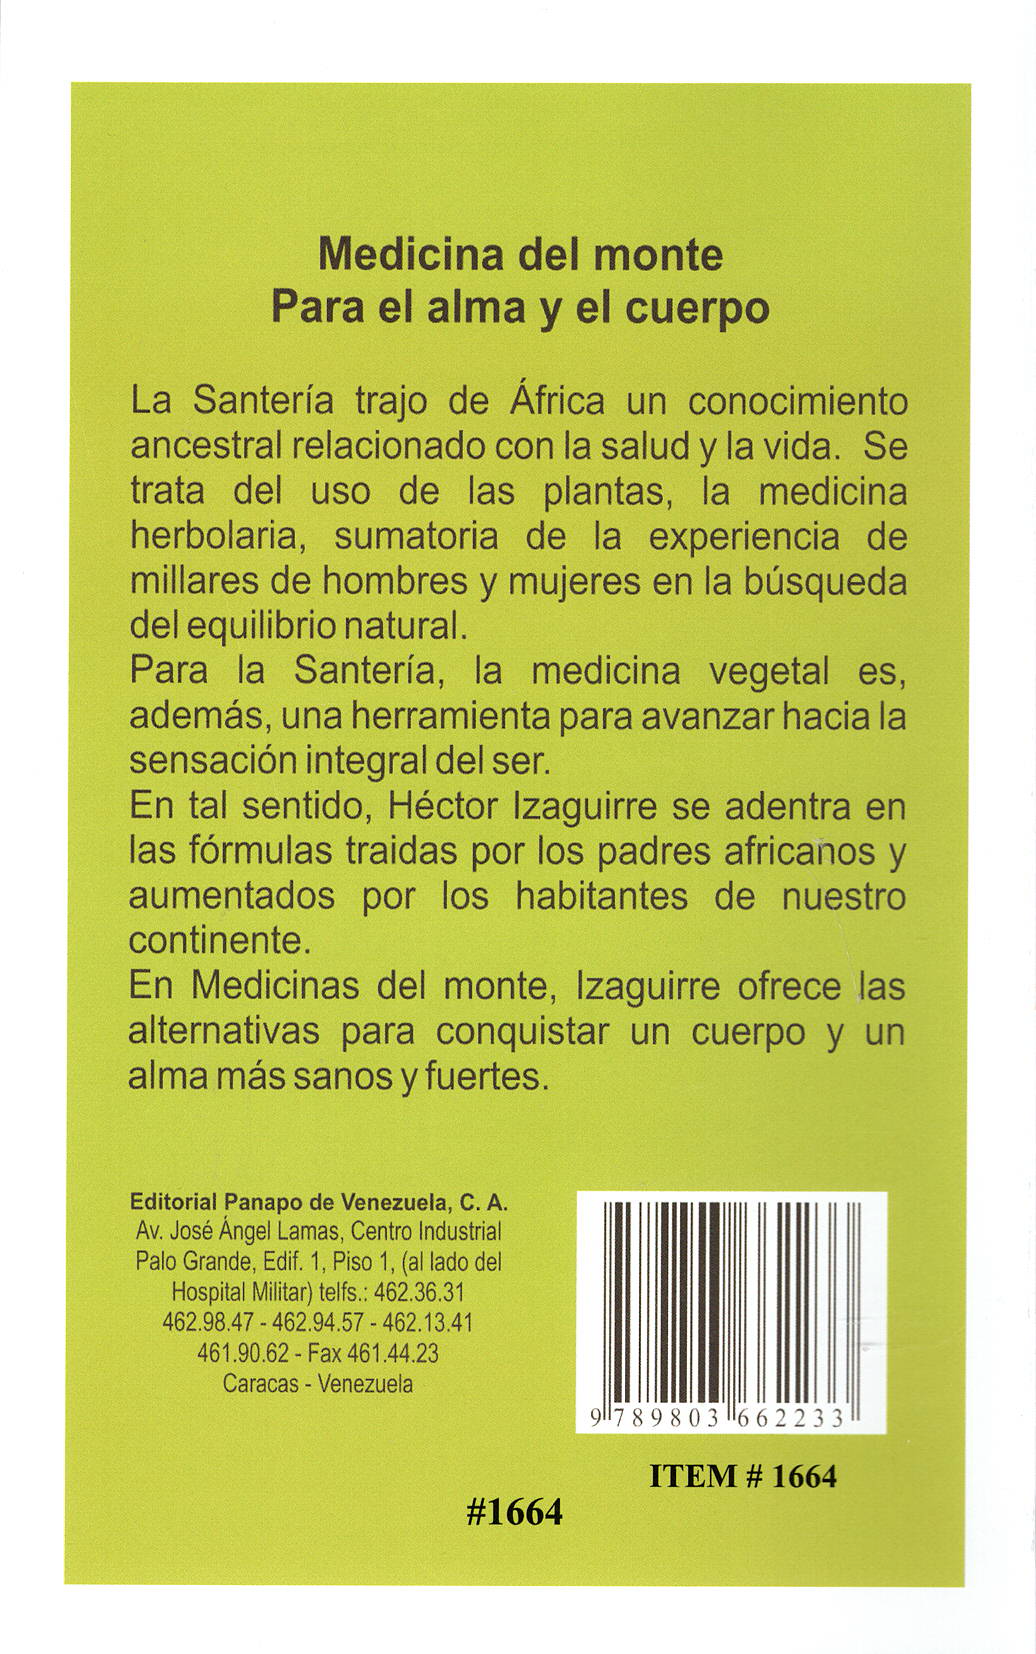 Medicinas del Monte, por Héctor Izaguirre